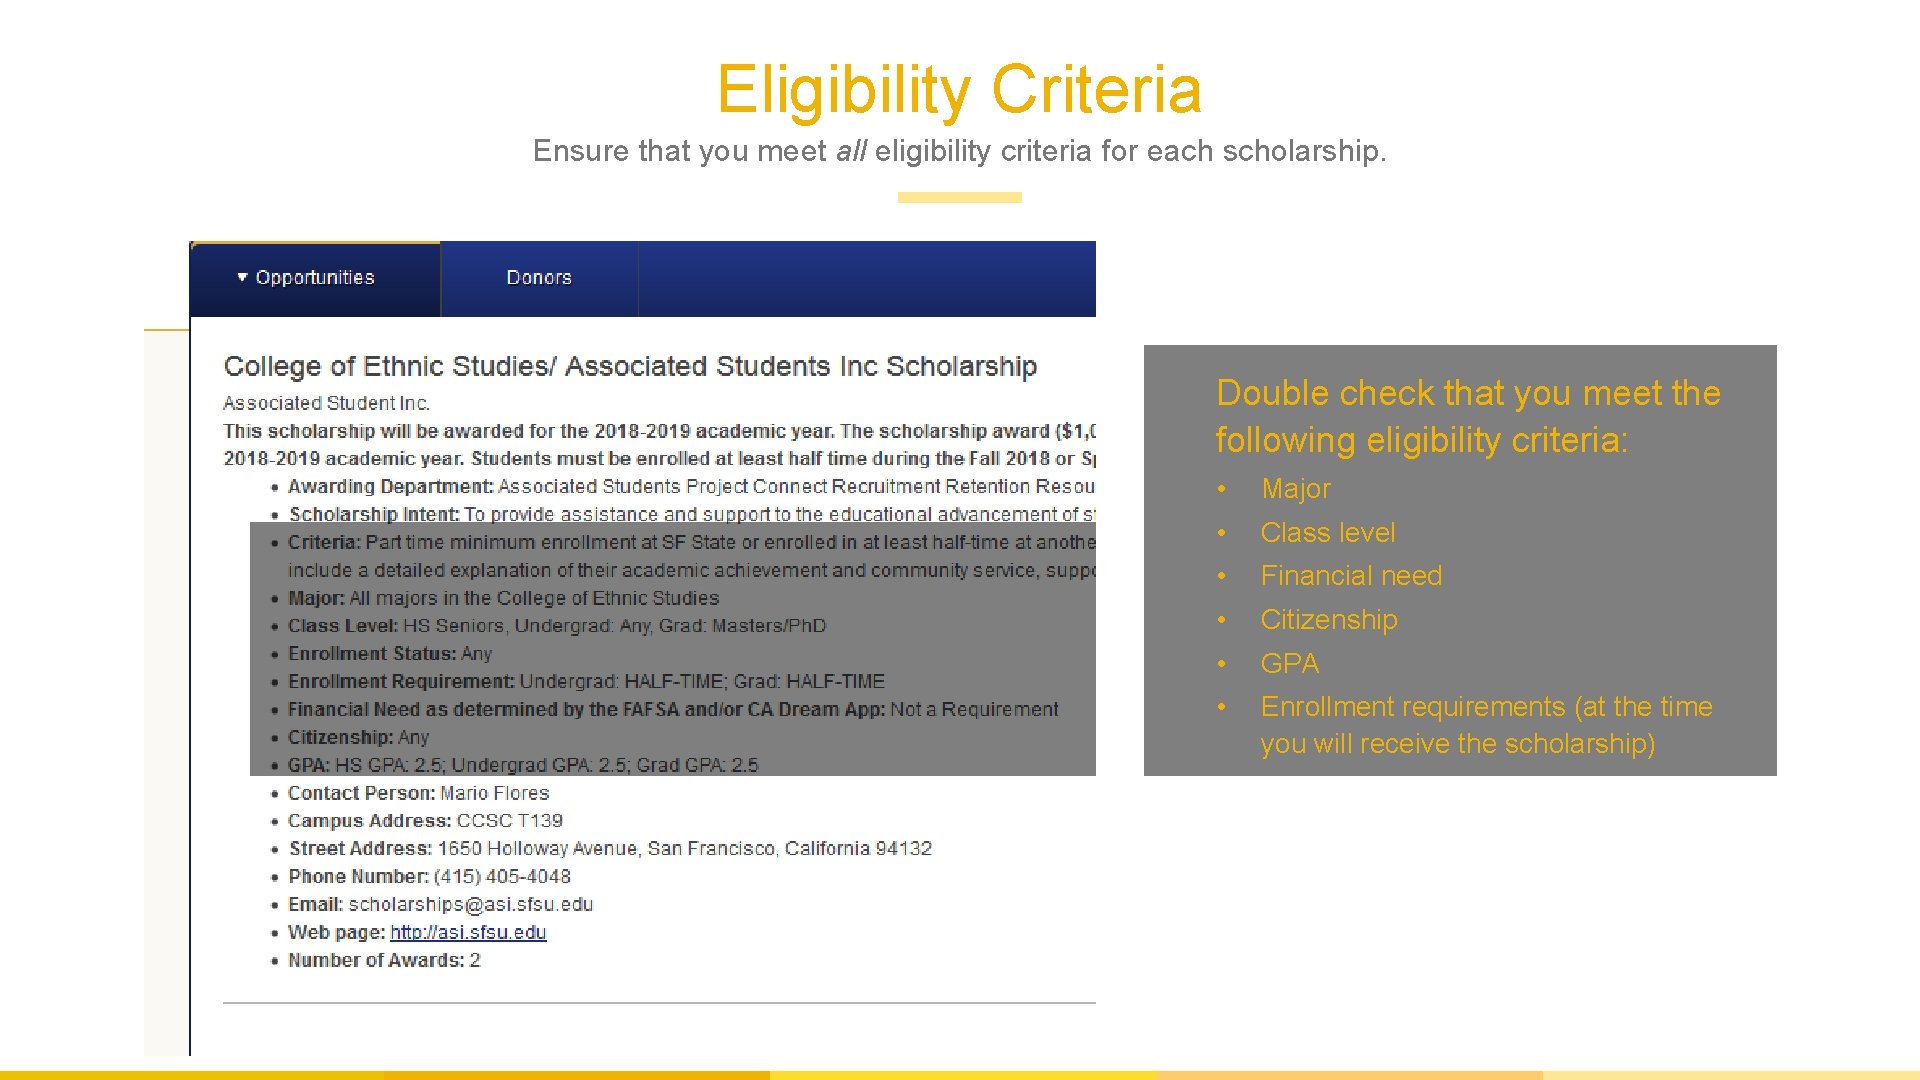 Eligibility Criteria Ensure that you meet all eligibility criteria for each scholarship. Double check